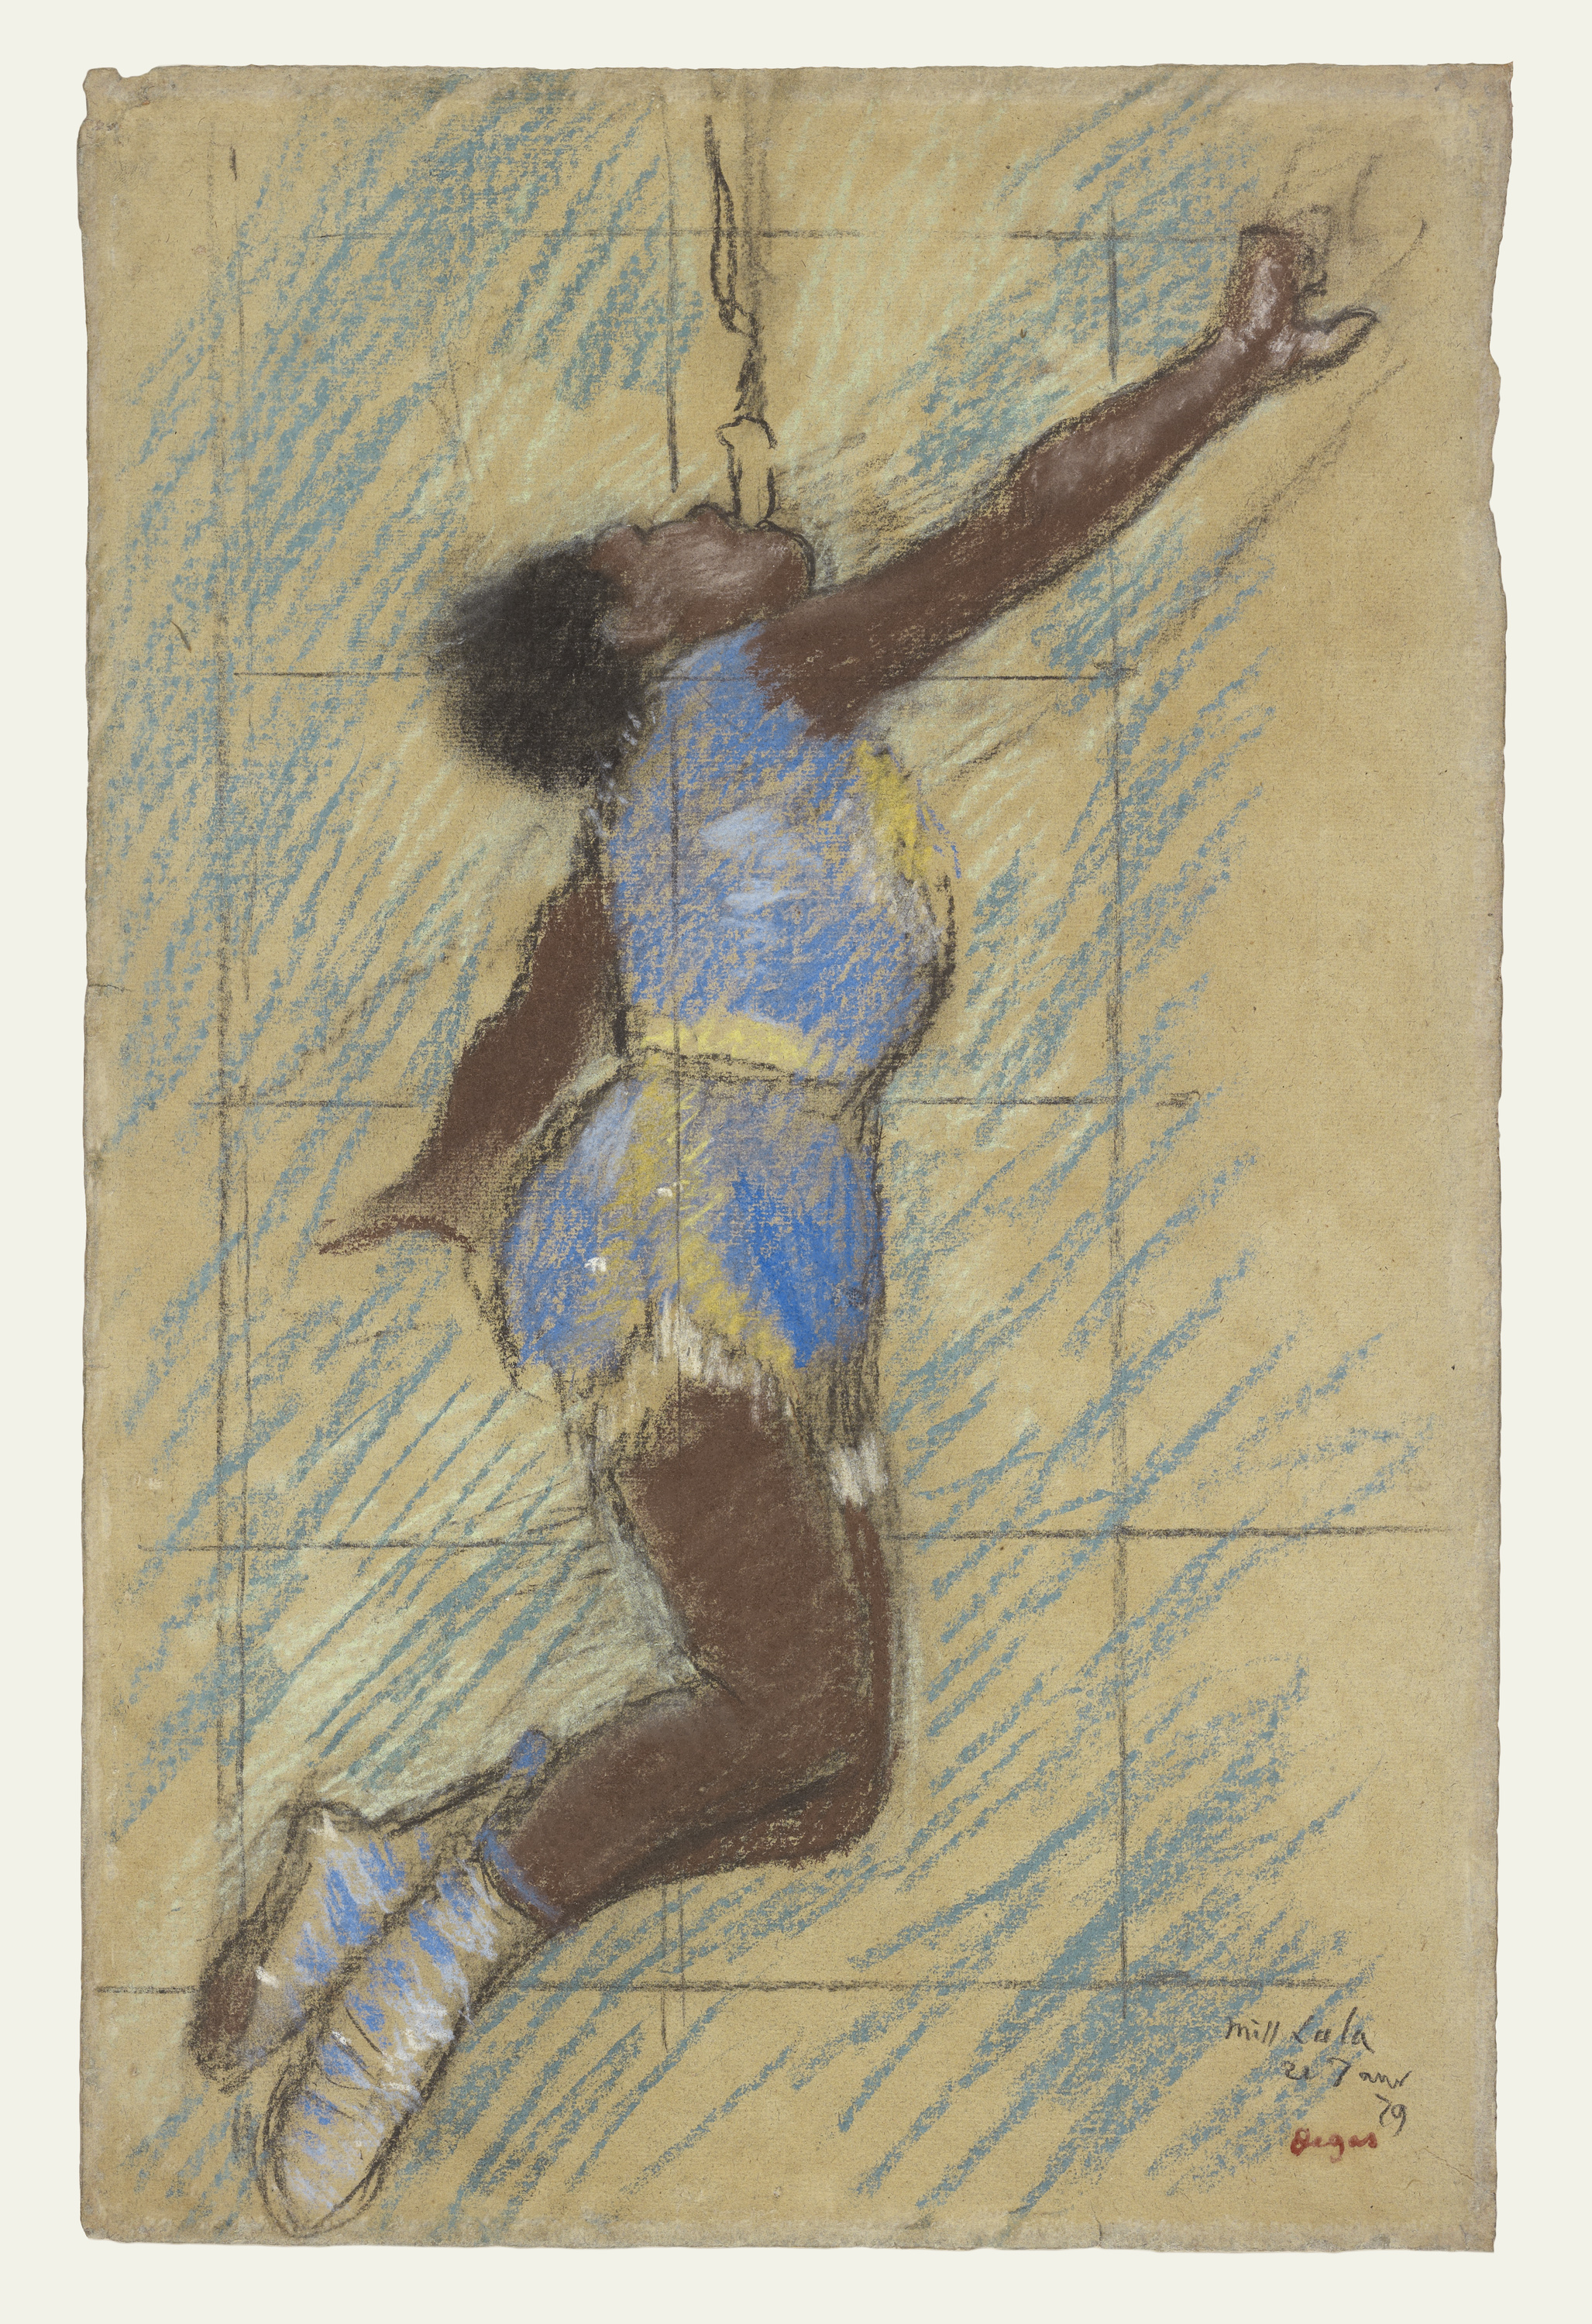 費爾南德馬戲團的拉拉小姐 by Edgar Degas - 1879 - 46.4 x 29.8 cm 